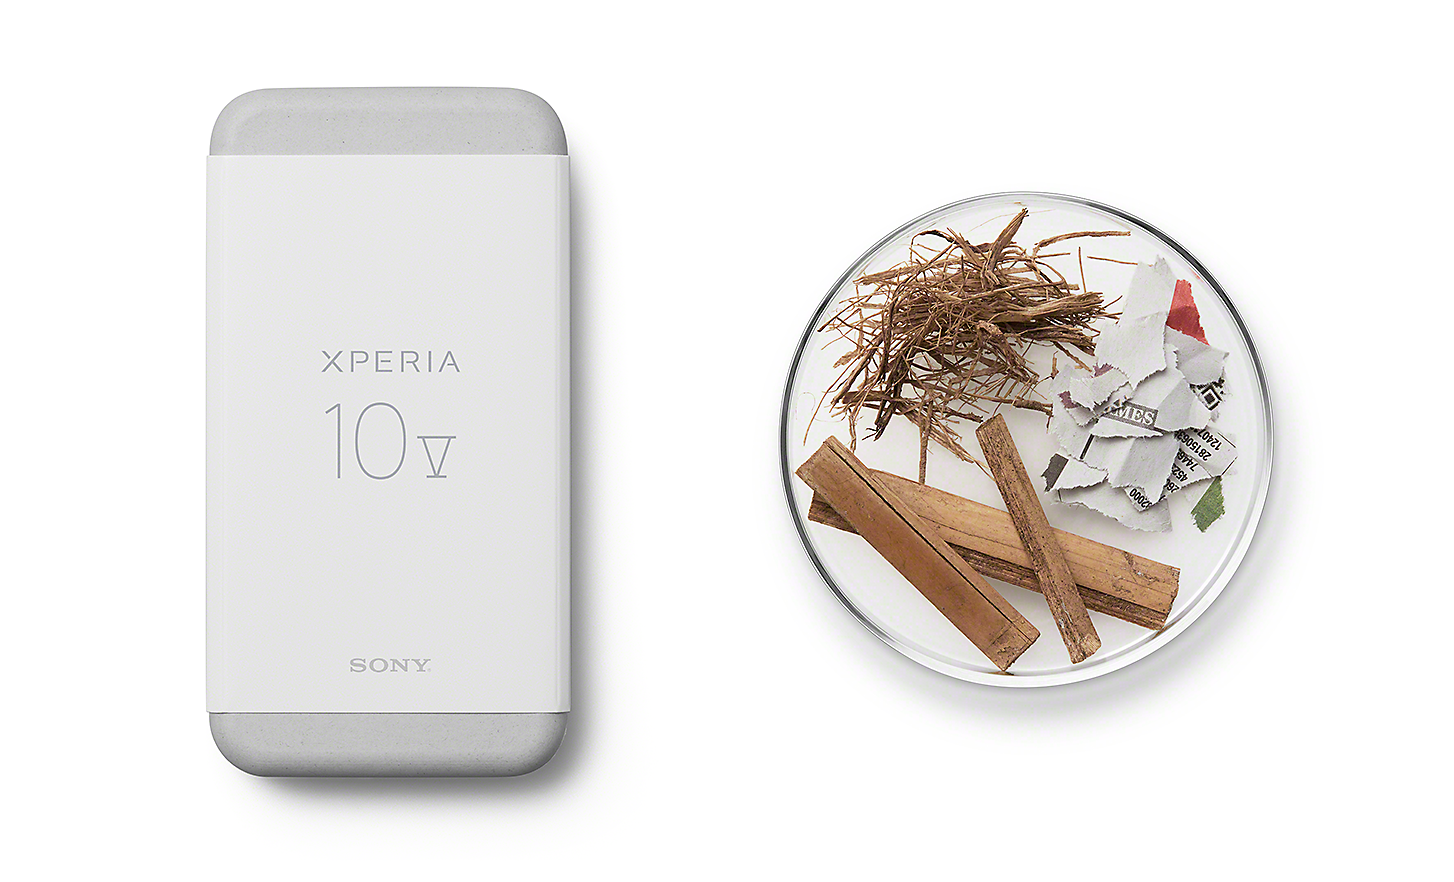 Balenie smartfónu Xperia 10 V spolu s niekoľkými udržateľnými materiálmi